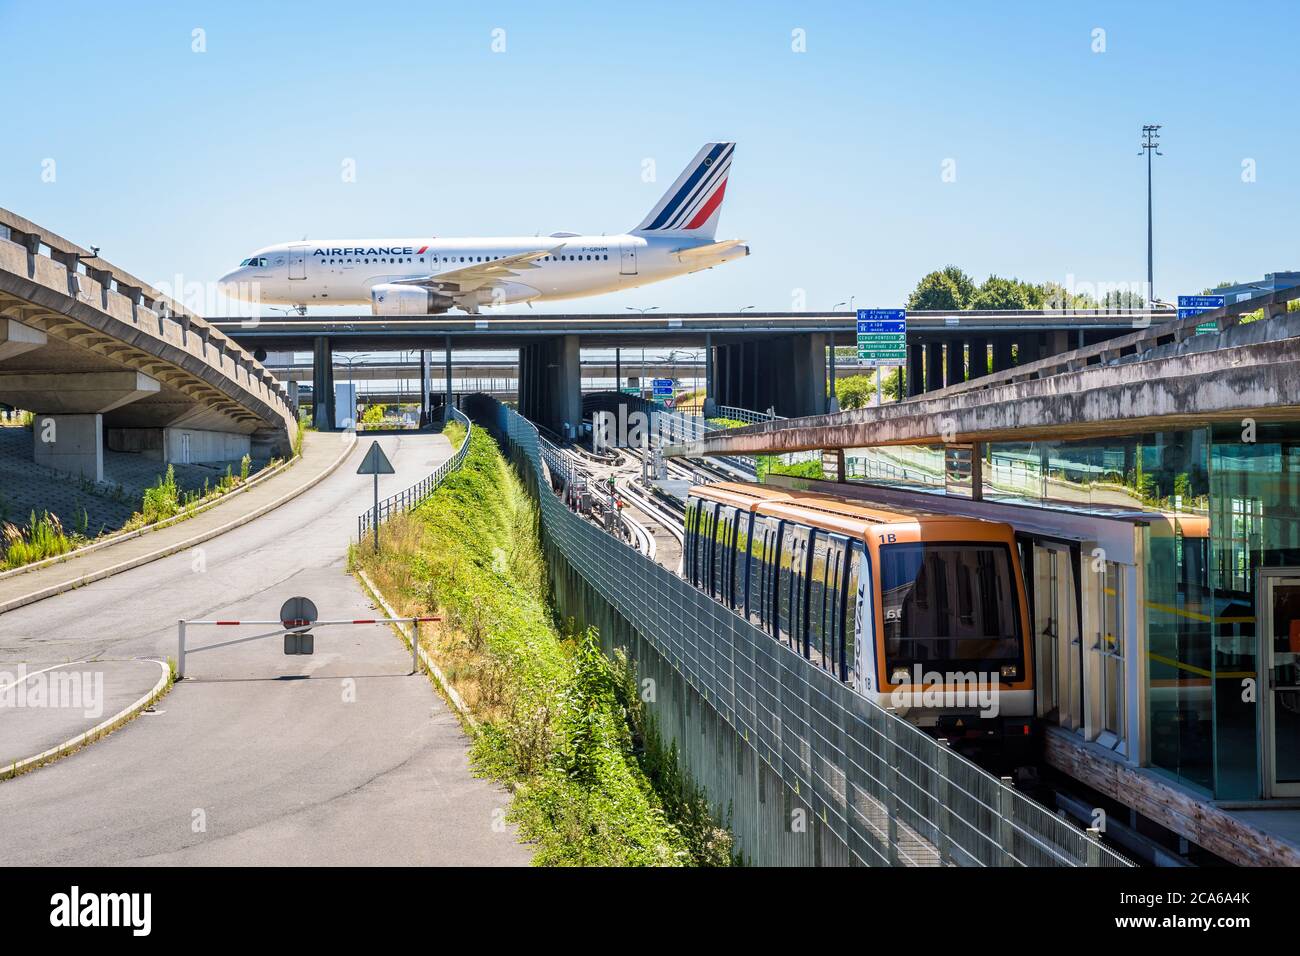 Un aereo di linea sta rotolando su un ponte della Taxiway dell'aeroporto di Parigi-Charles de Gaulle mentre una navetta aeroportuale CDGVAL sta stazionando alla stazione del Terminal 1. Foto Stock